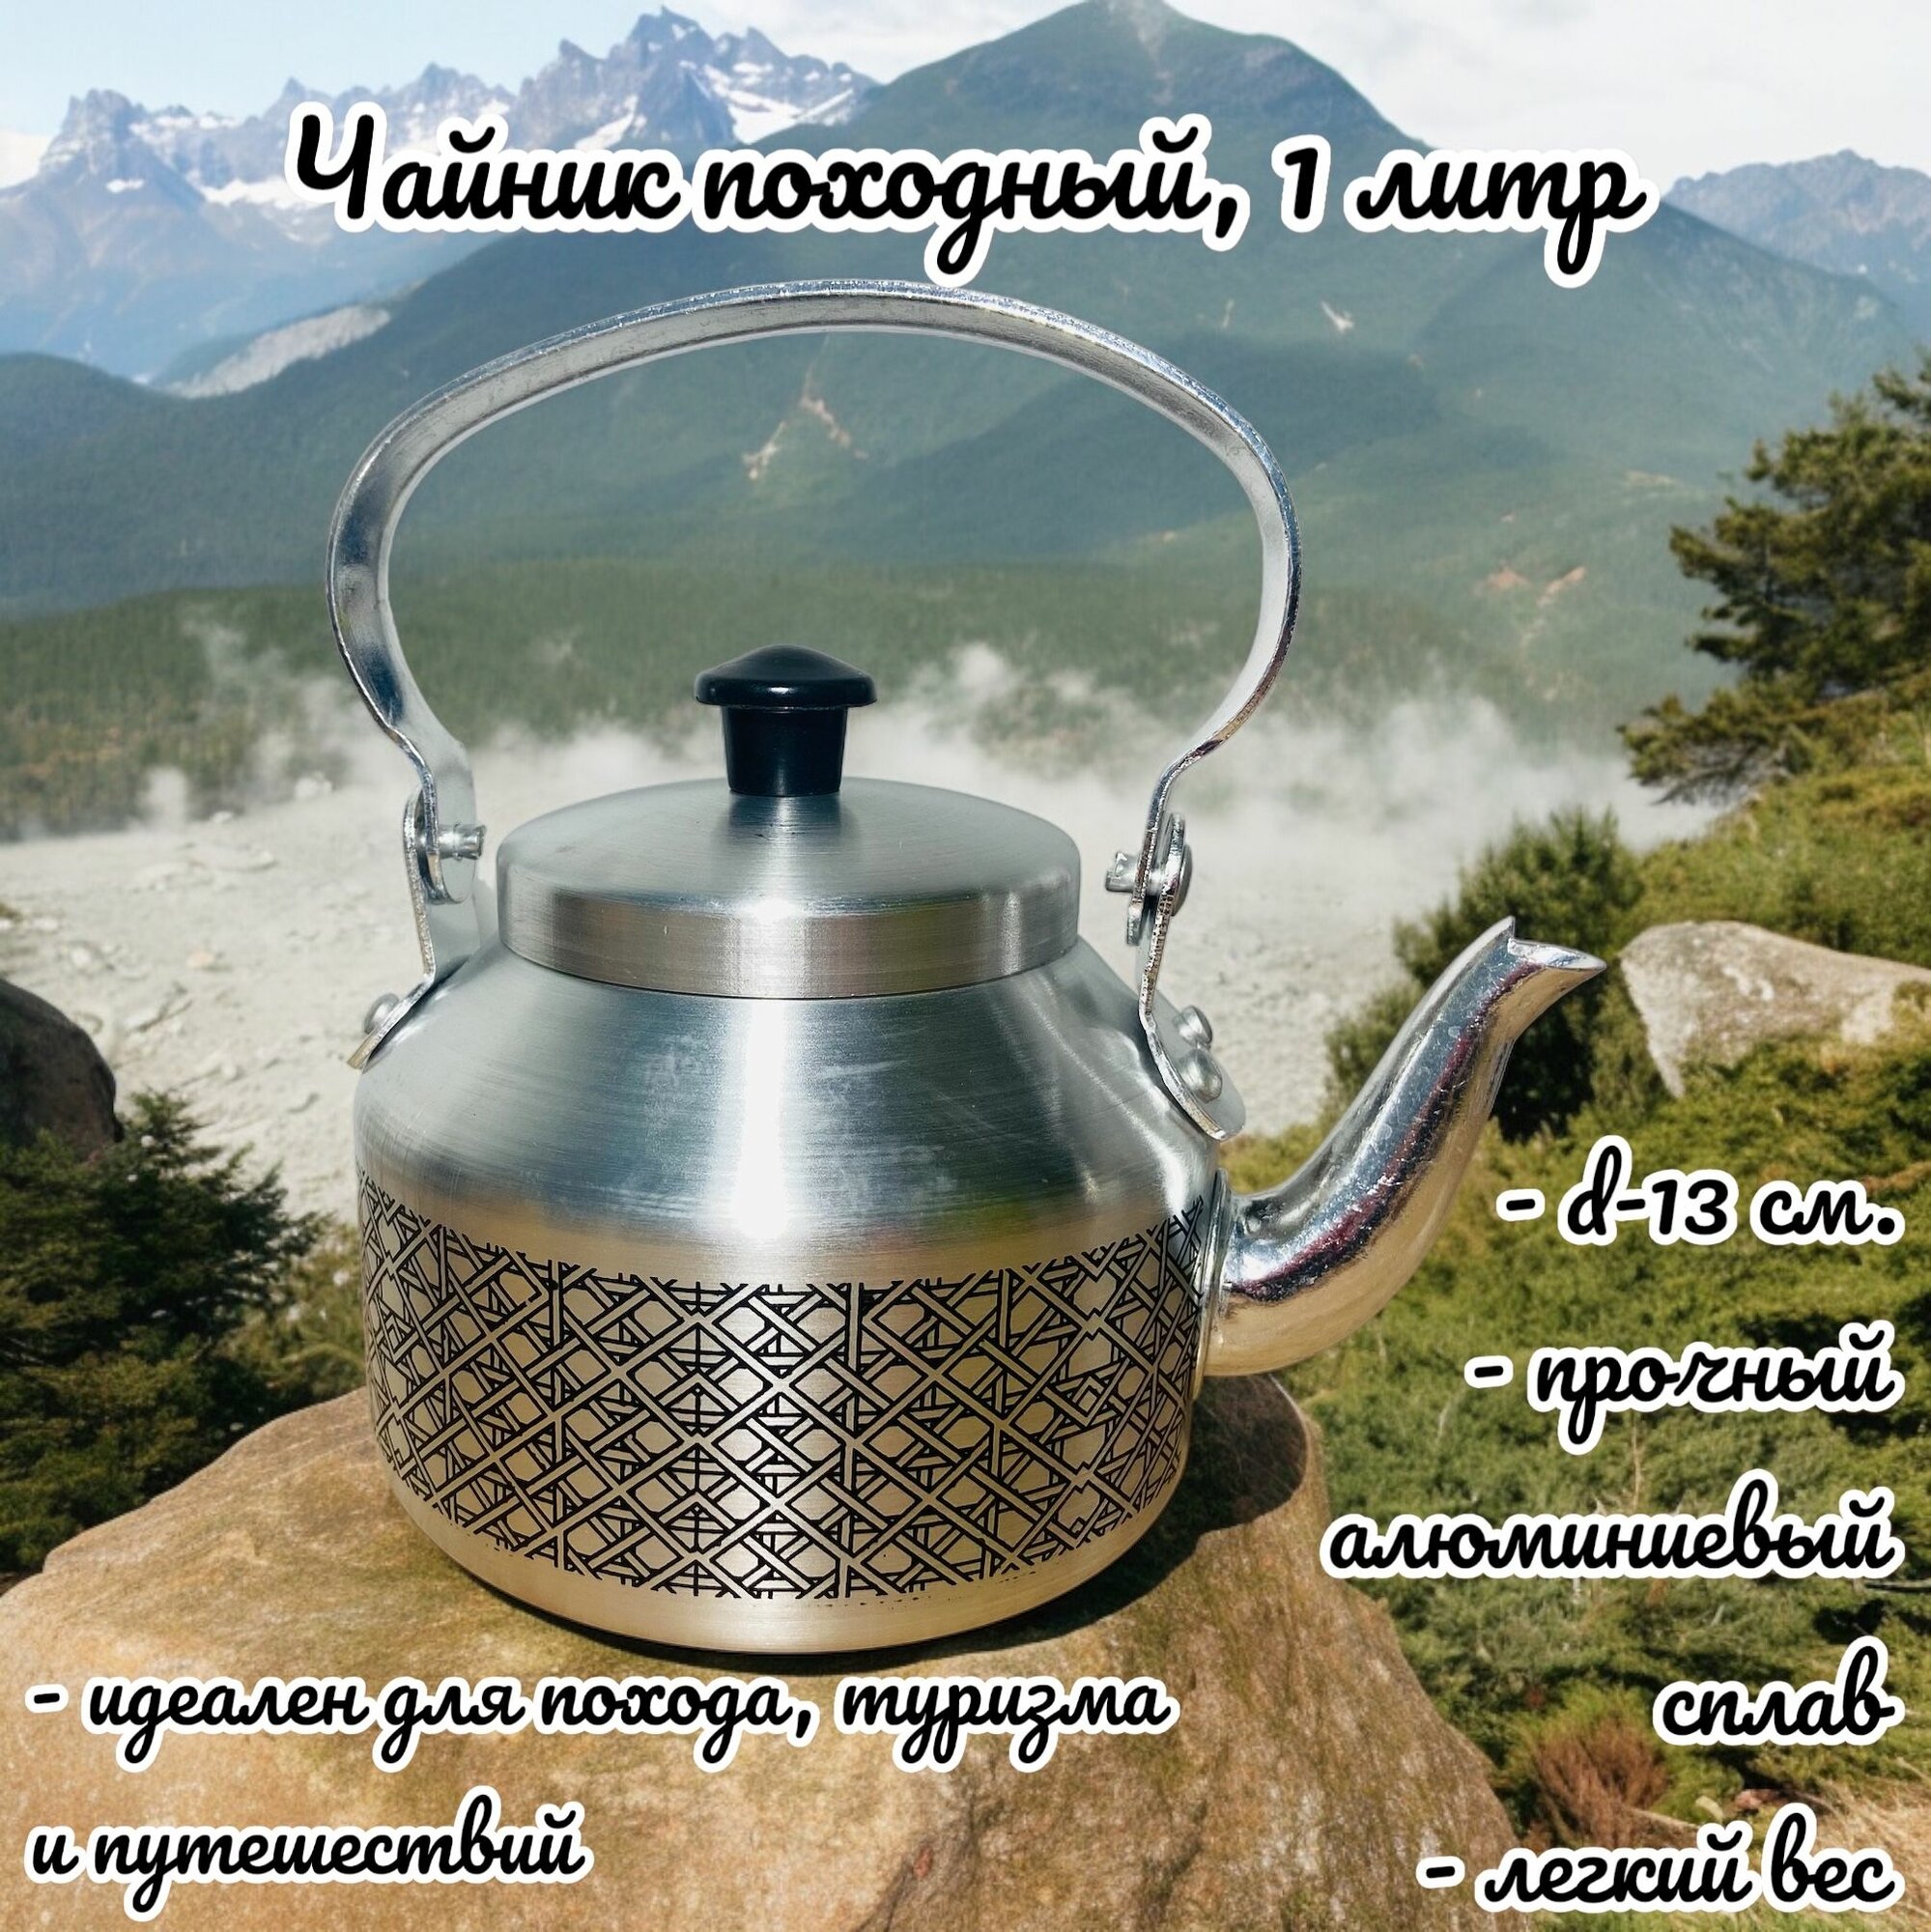 Чайник походный туристический из алюминия, d - 13 см, 1 л.